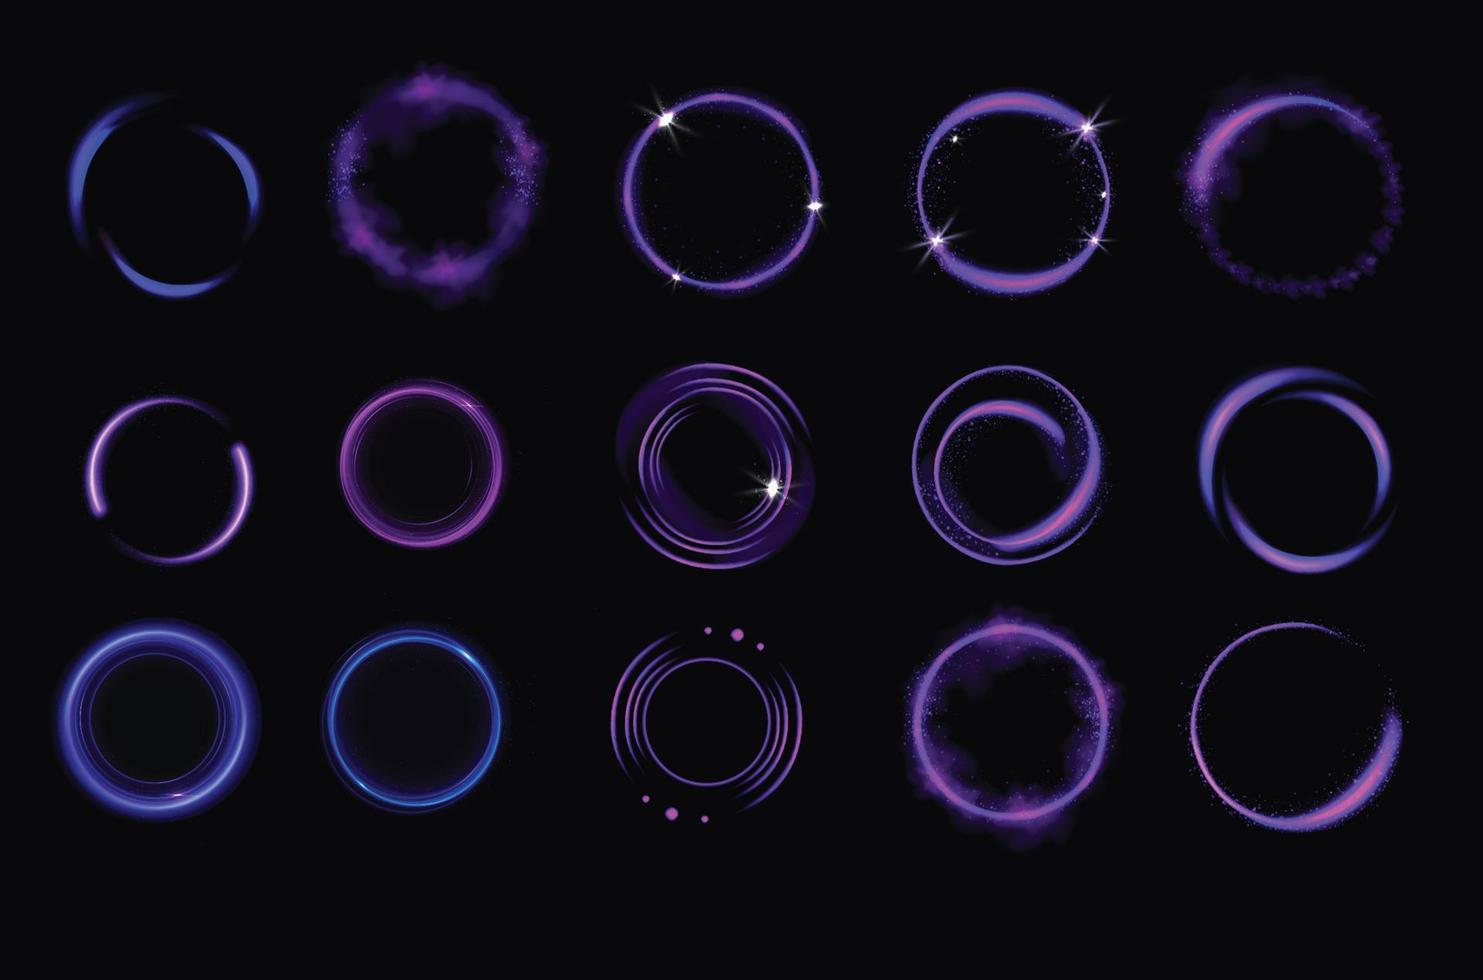 leuchtende violette kreise mit funkeln, runden rahmen vektor